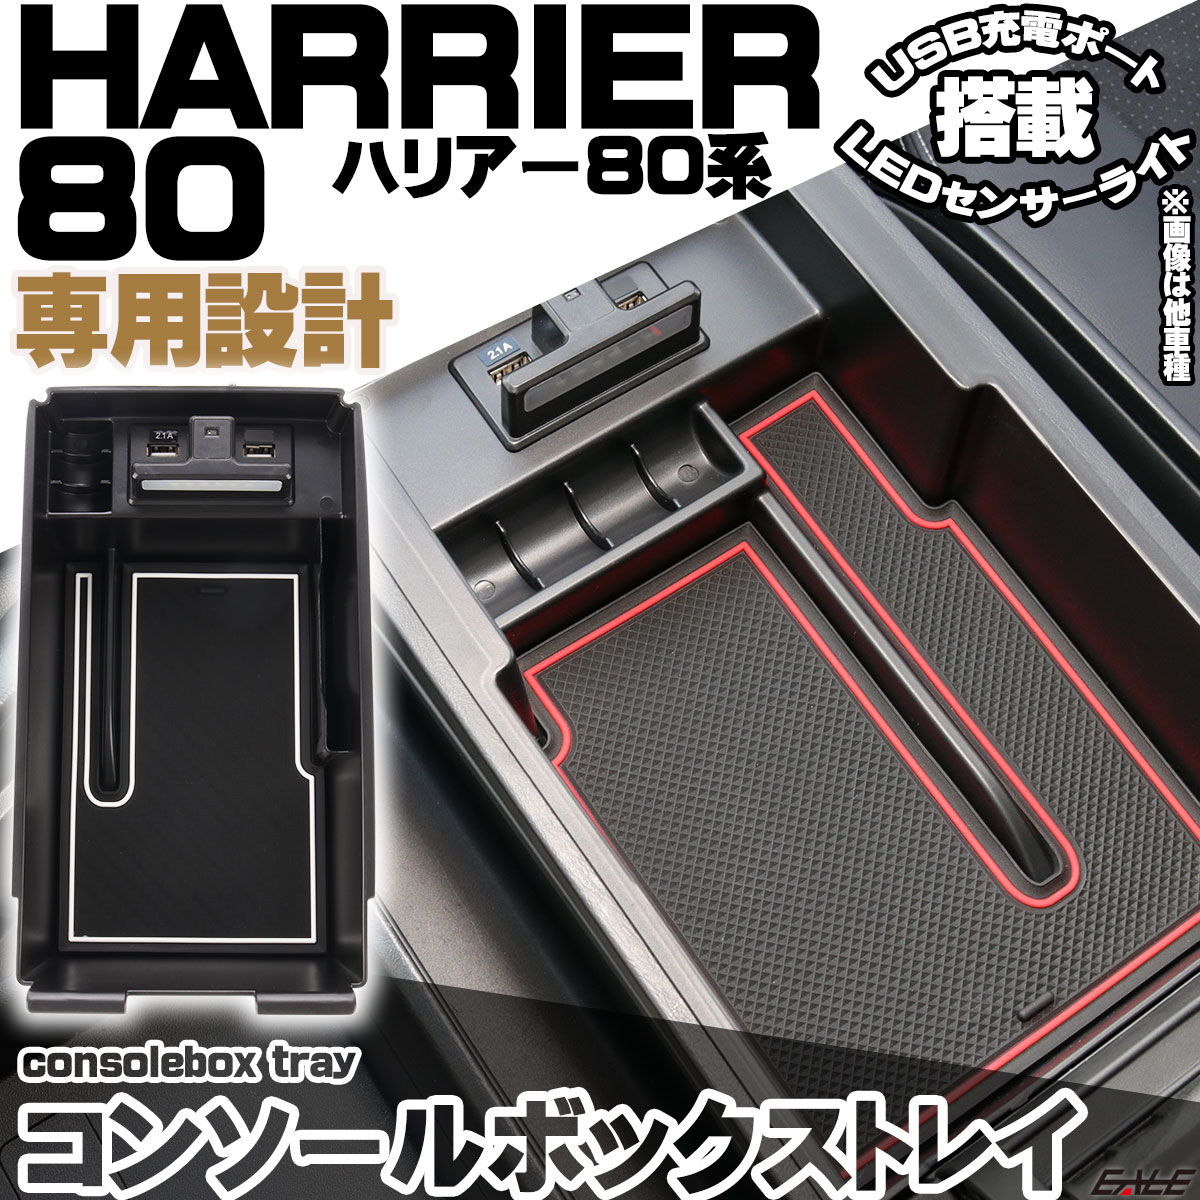 ハリアー HARRIER 80系 専用設計 センター コンソール ボックス トレイ USB 2ポート 急速充電 LED センサーライト 搭載 S-874